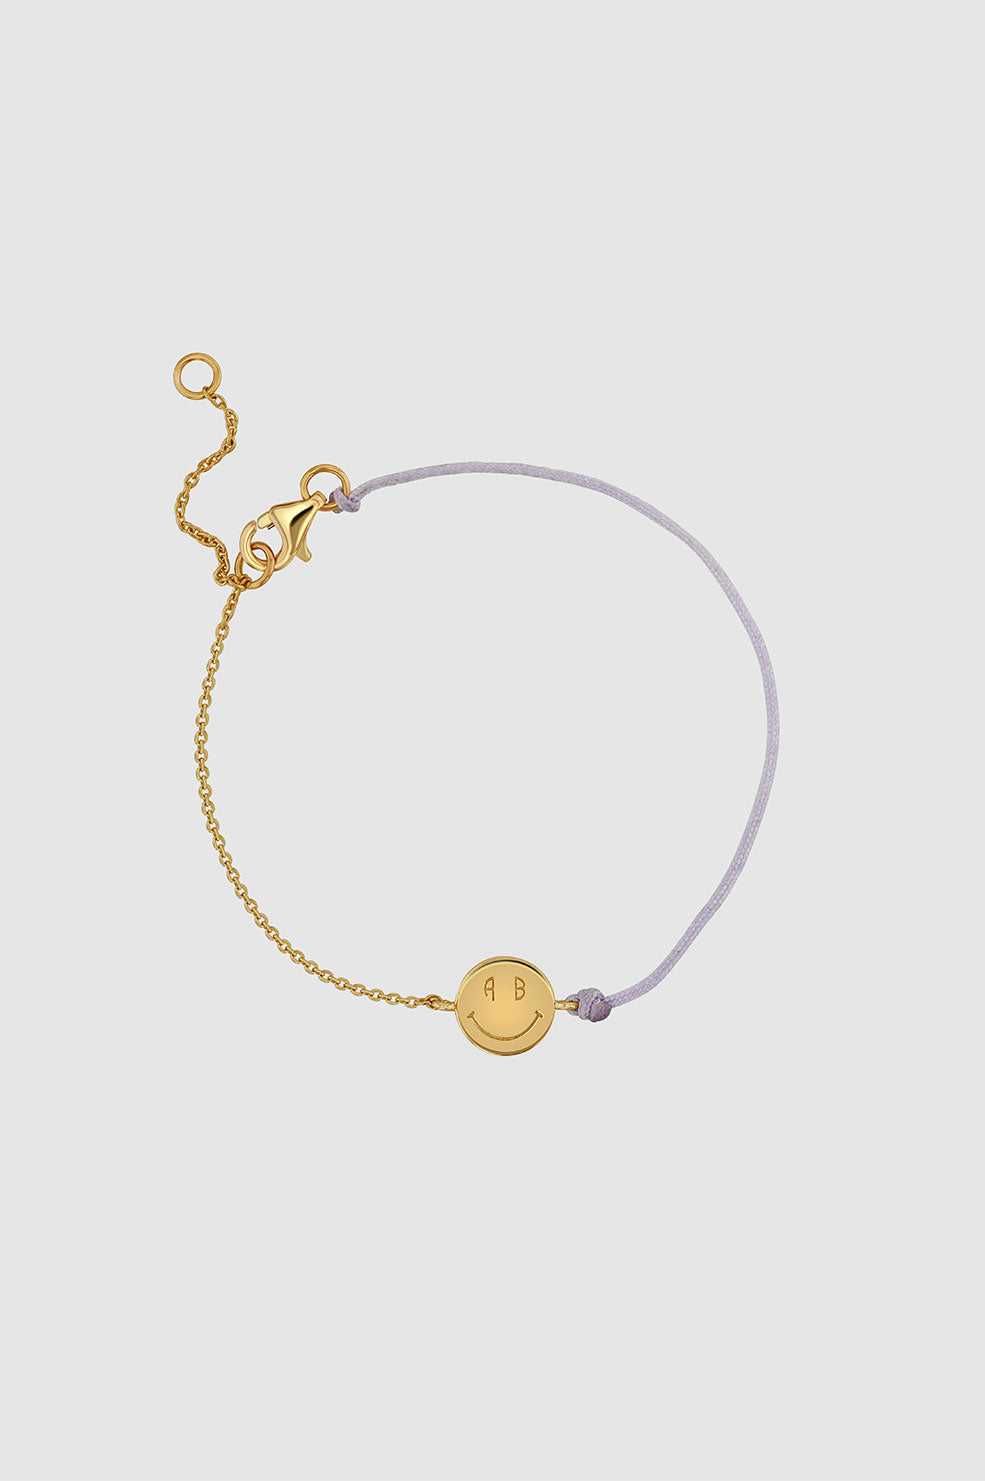 ANINE BING Smile String Chain Bracelet in 14k Gold And Lavender